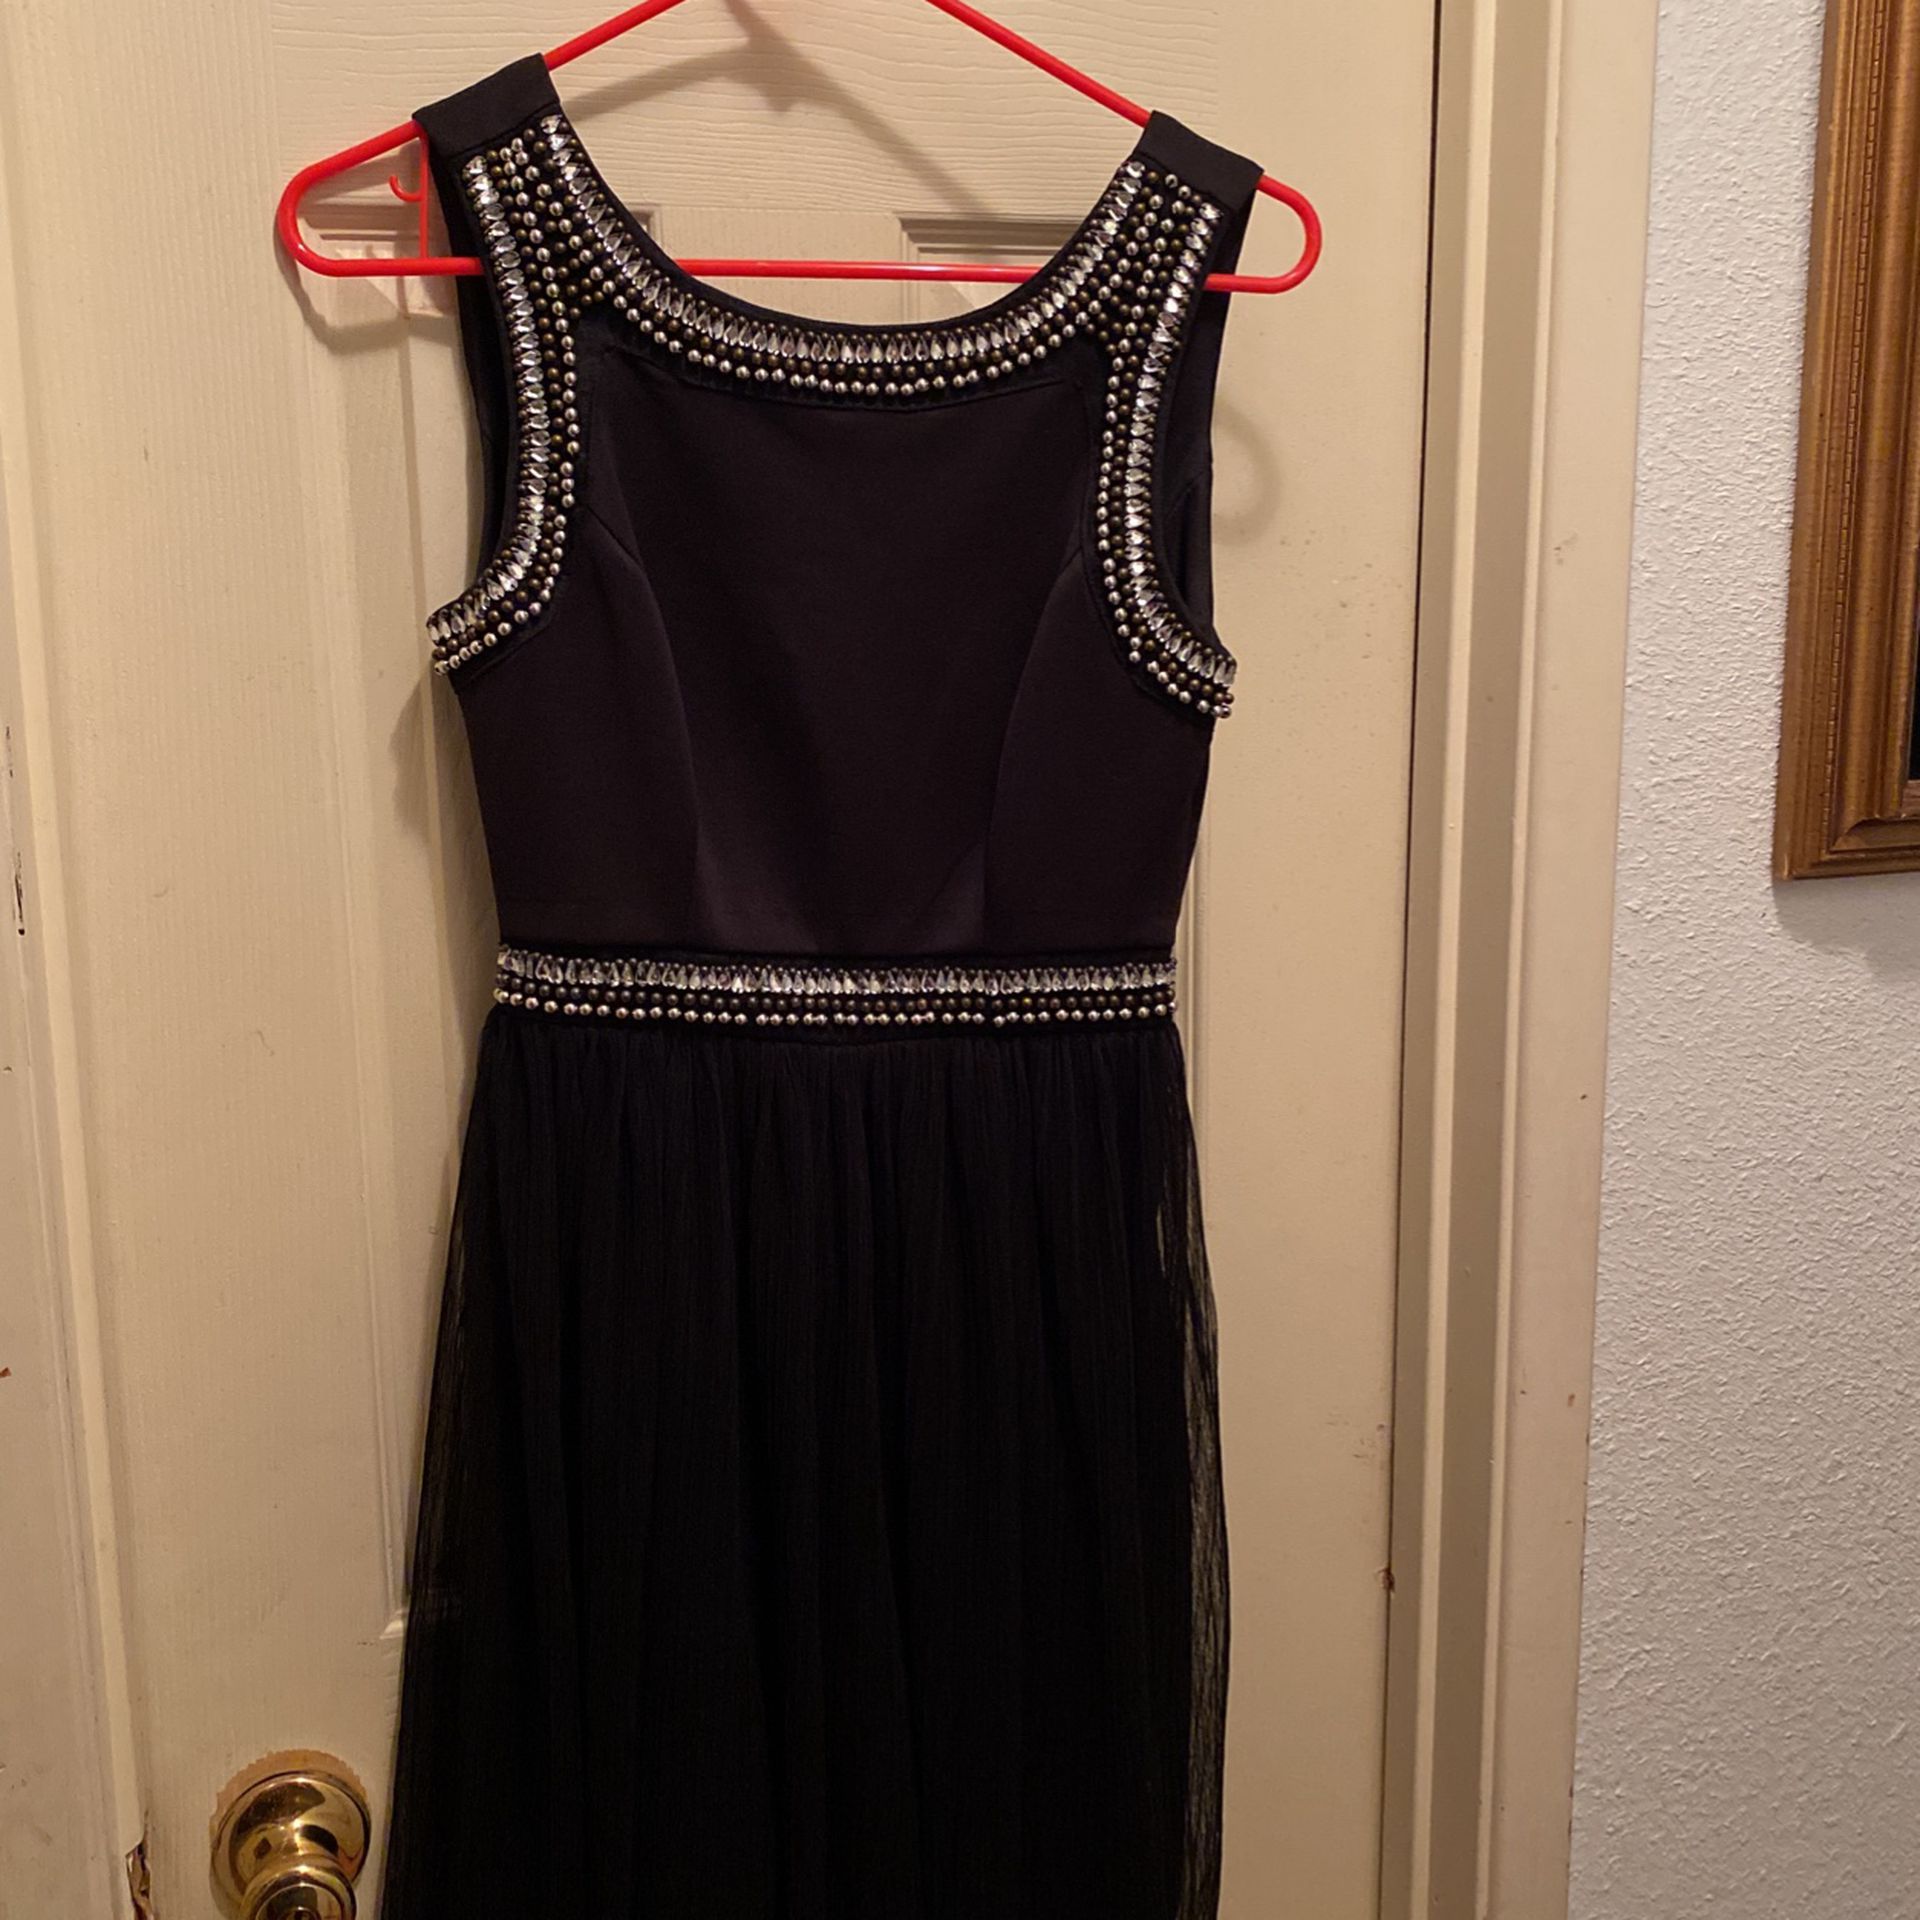 Beautiful Dress size 1